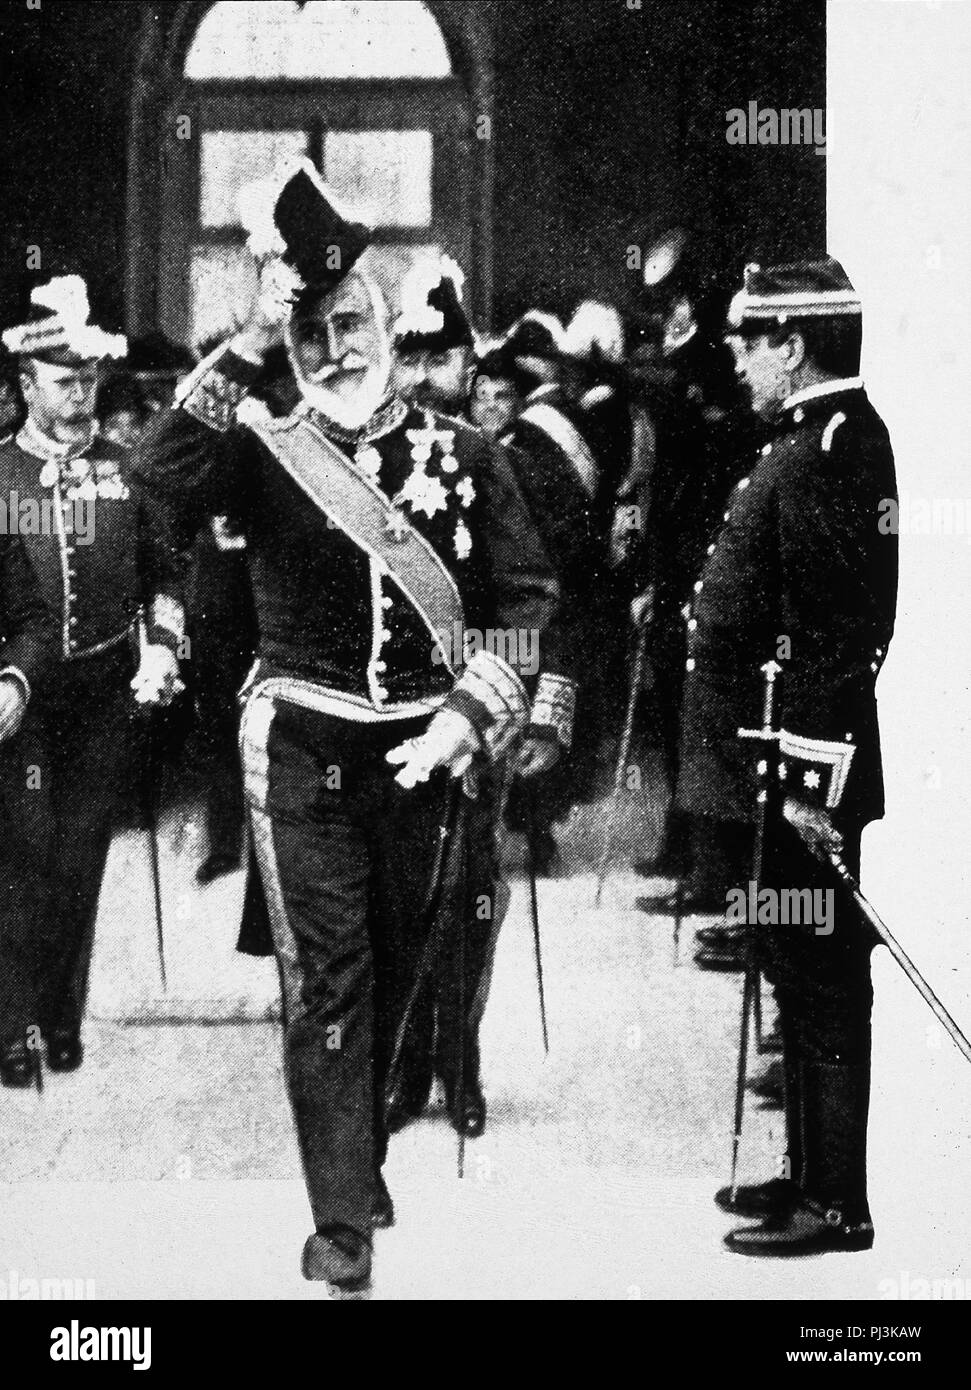 ANTONIO MAURA SALIENDO DE UN CONSEJO DE MINISTROS DE ALFONSO XIII, 1913. Stock Photo